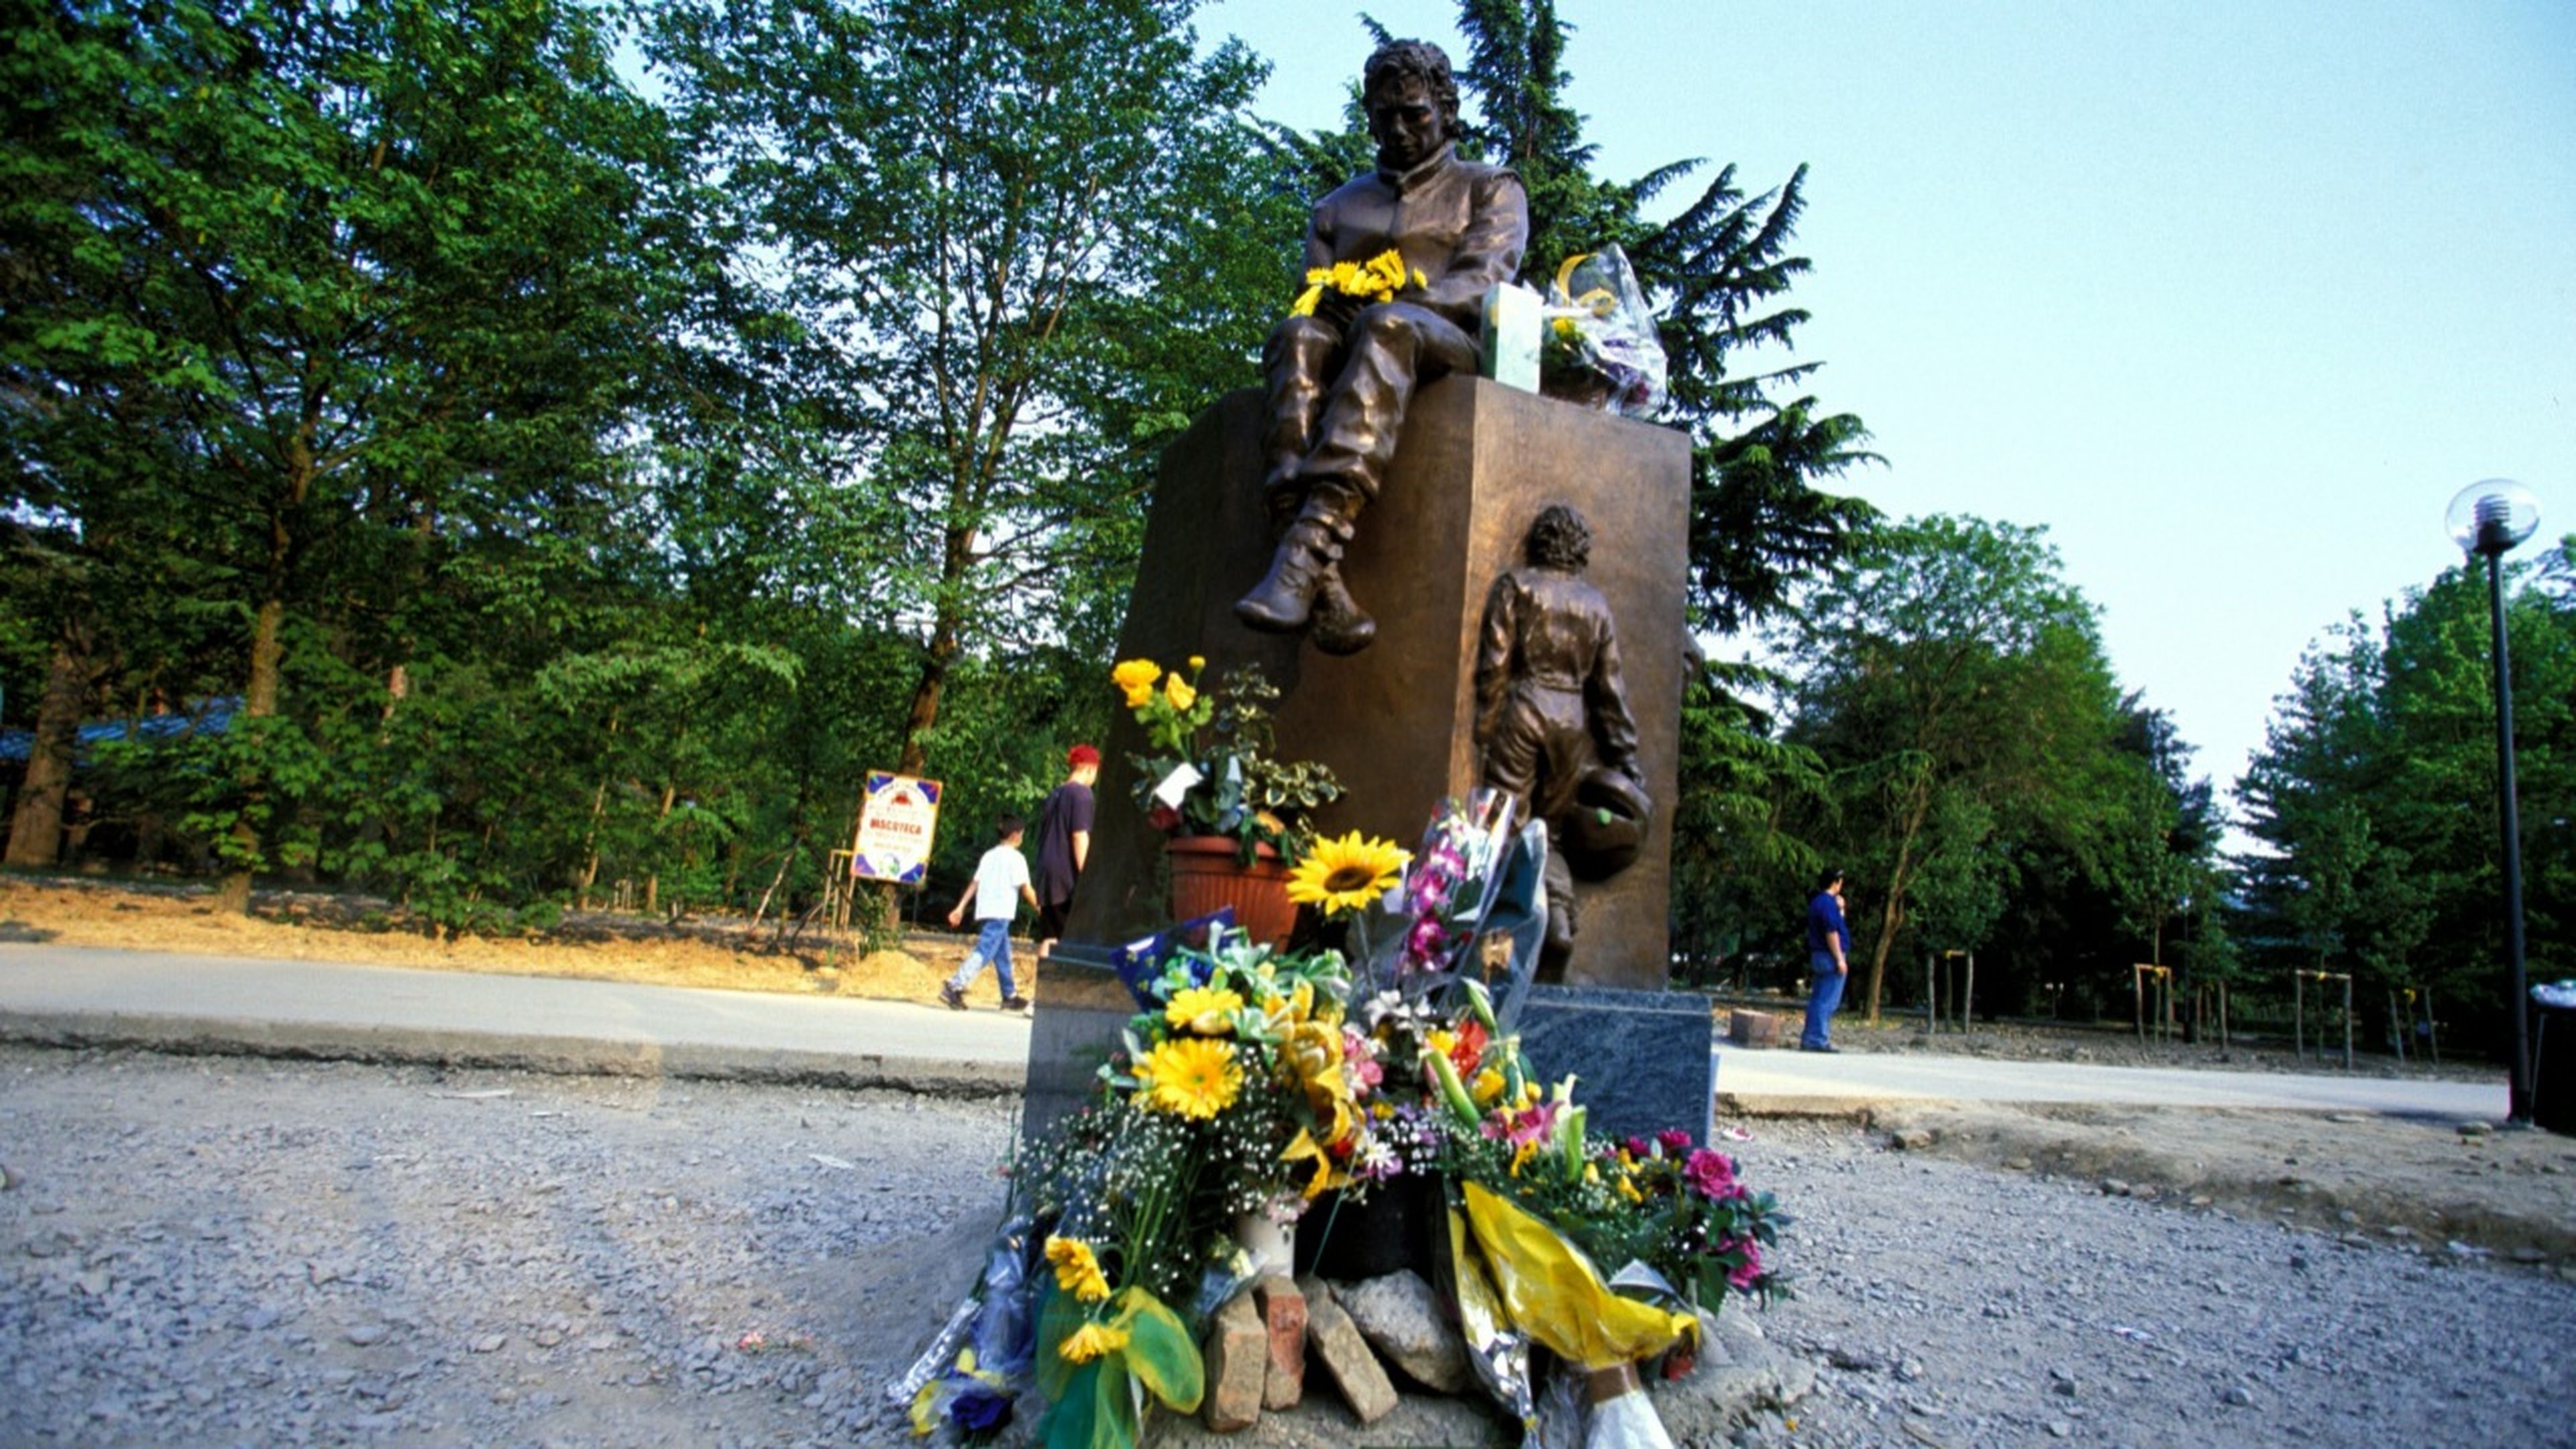 Memorial Senna en Imola